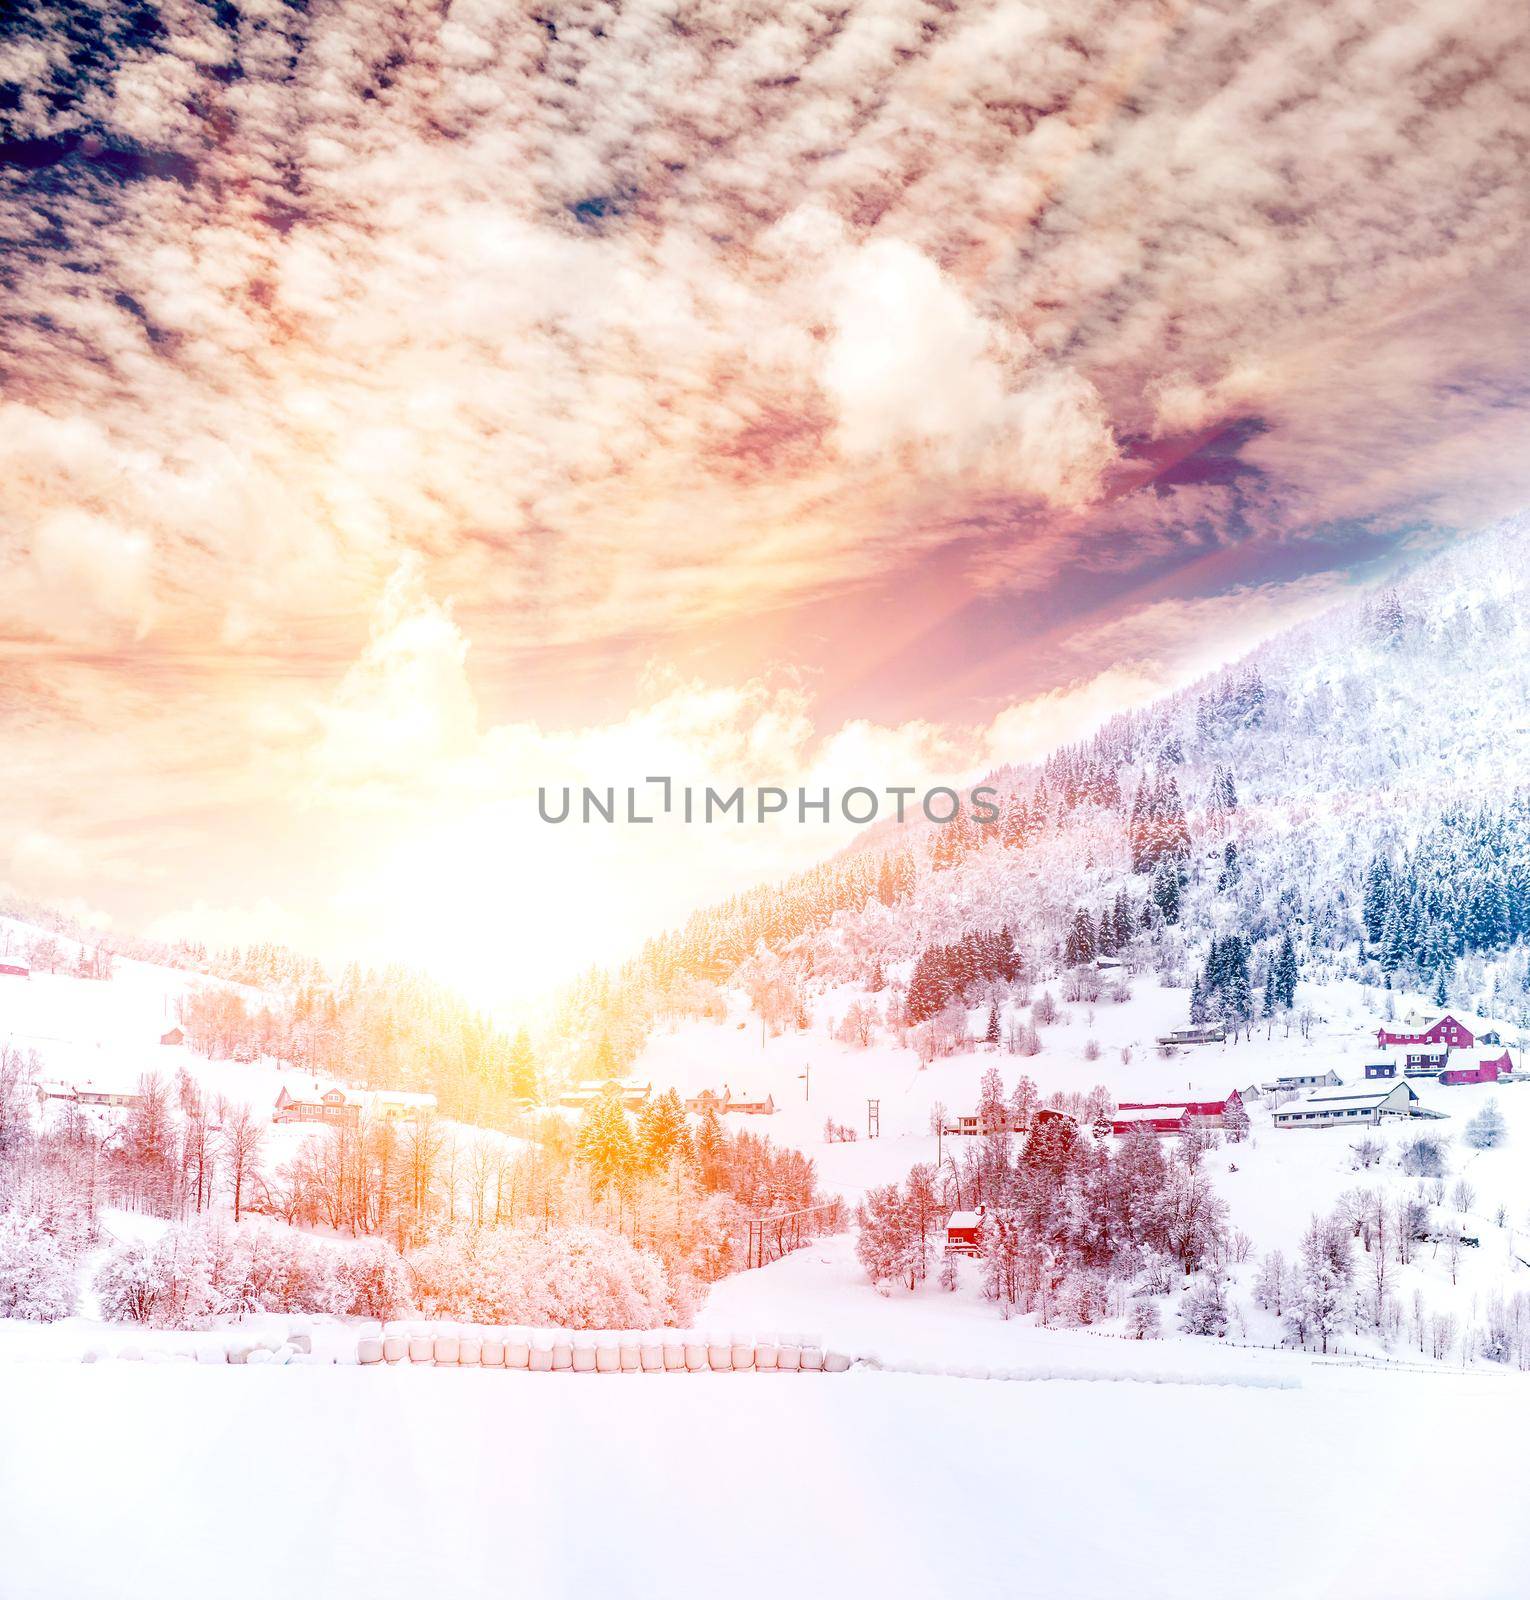 Landscape of winter Norway village by tan4ikk1